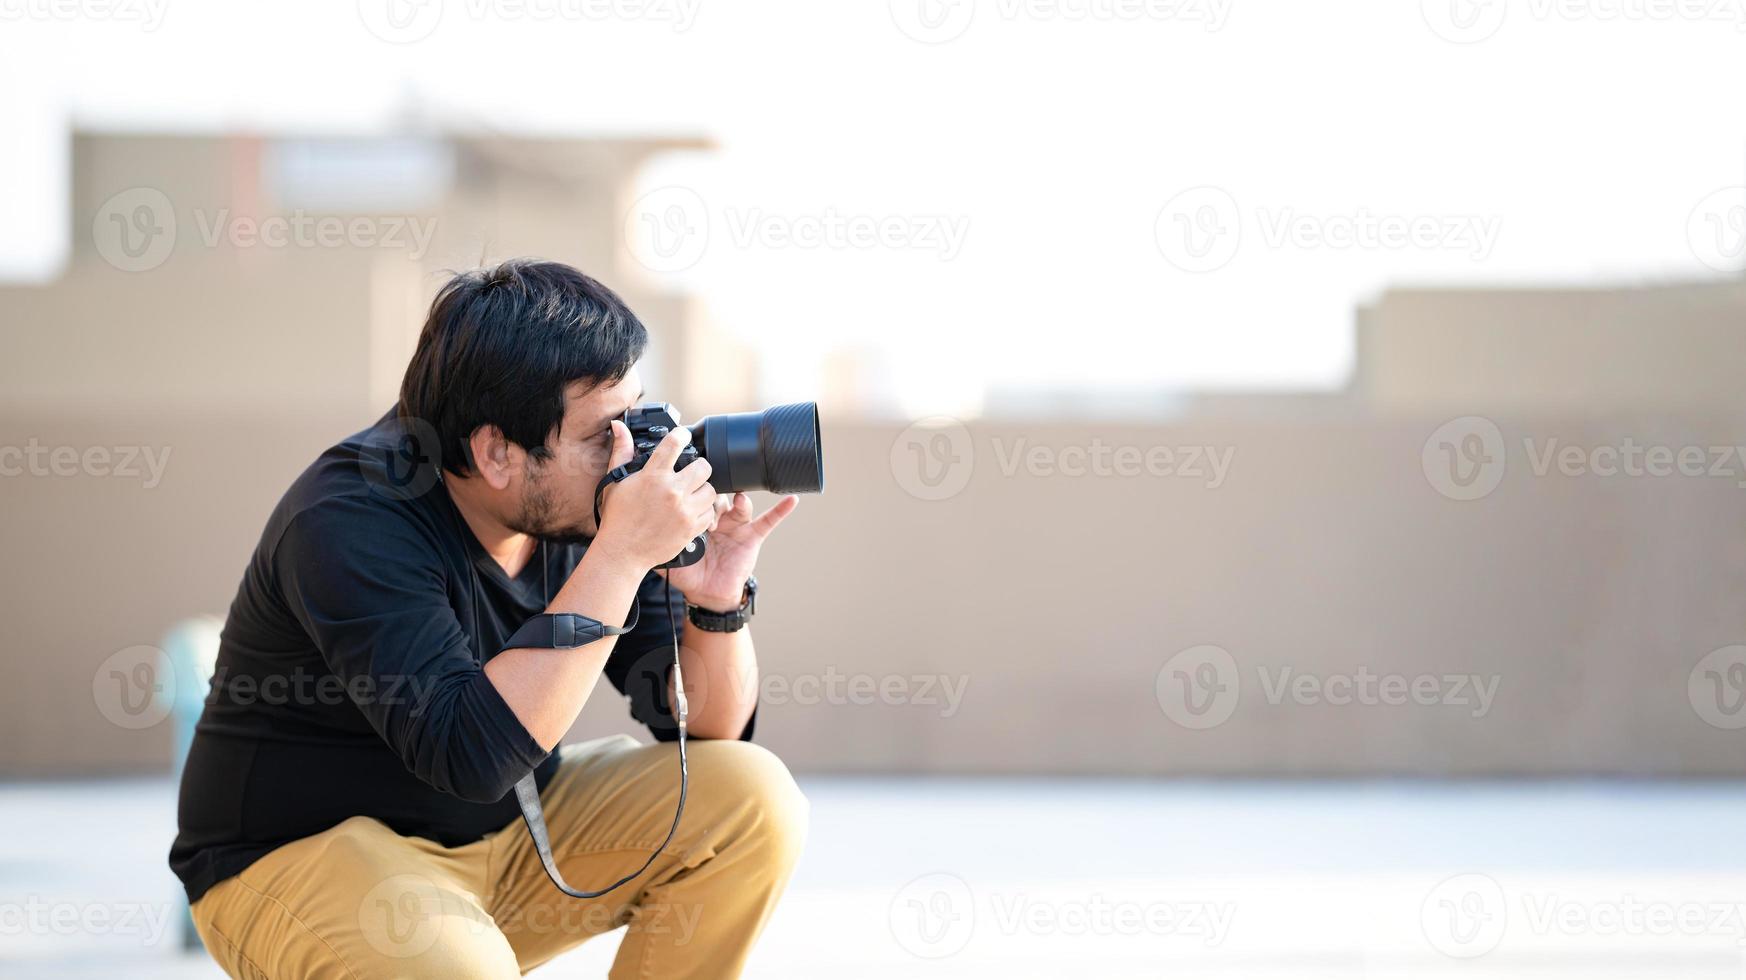 un caméraman professionnel asiatique regarde dans le viseur de l'appareil photo et se concentre sur la vue pour prendre une photo sur le terrain extérieur sur le toit.